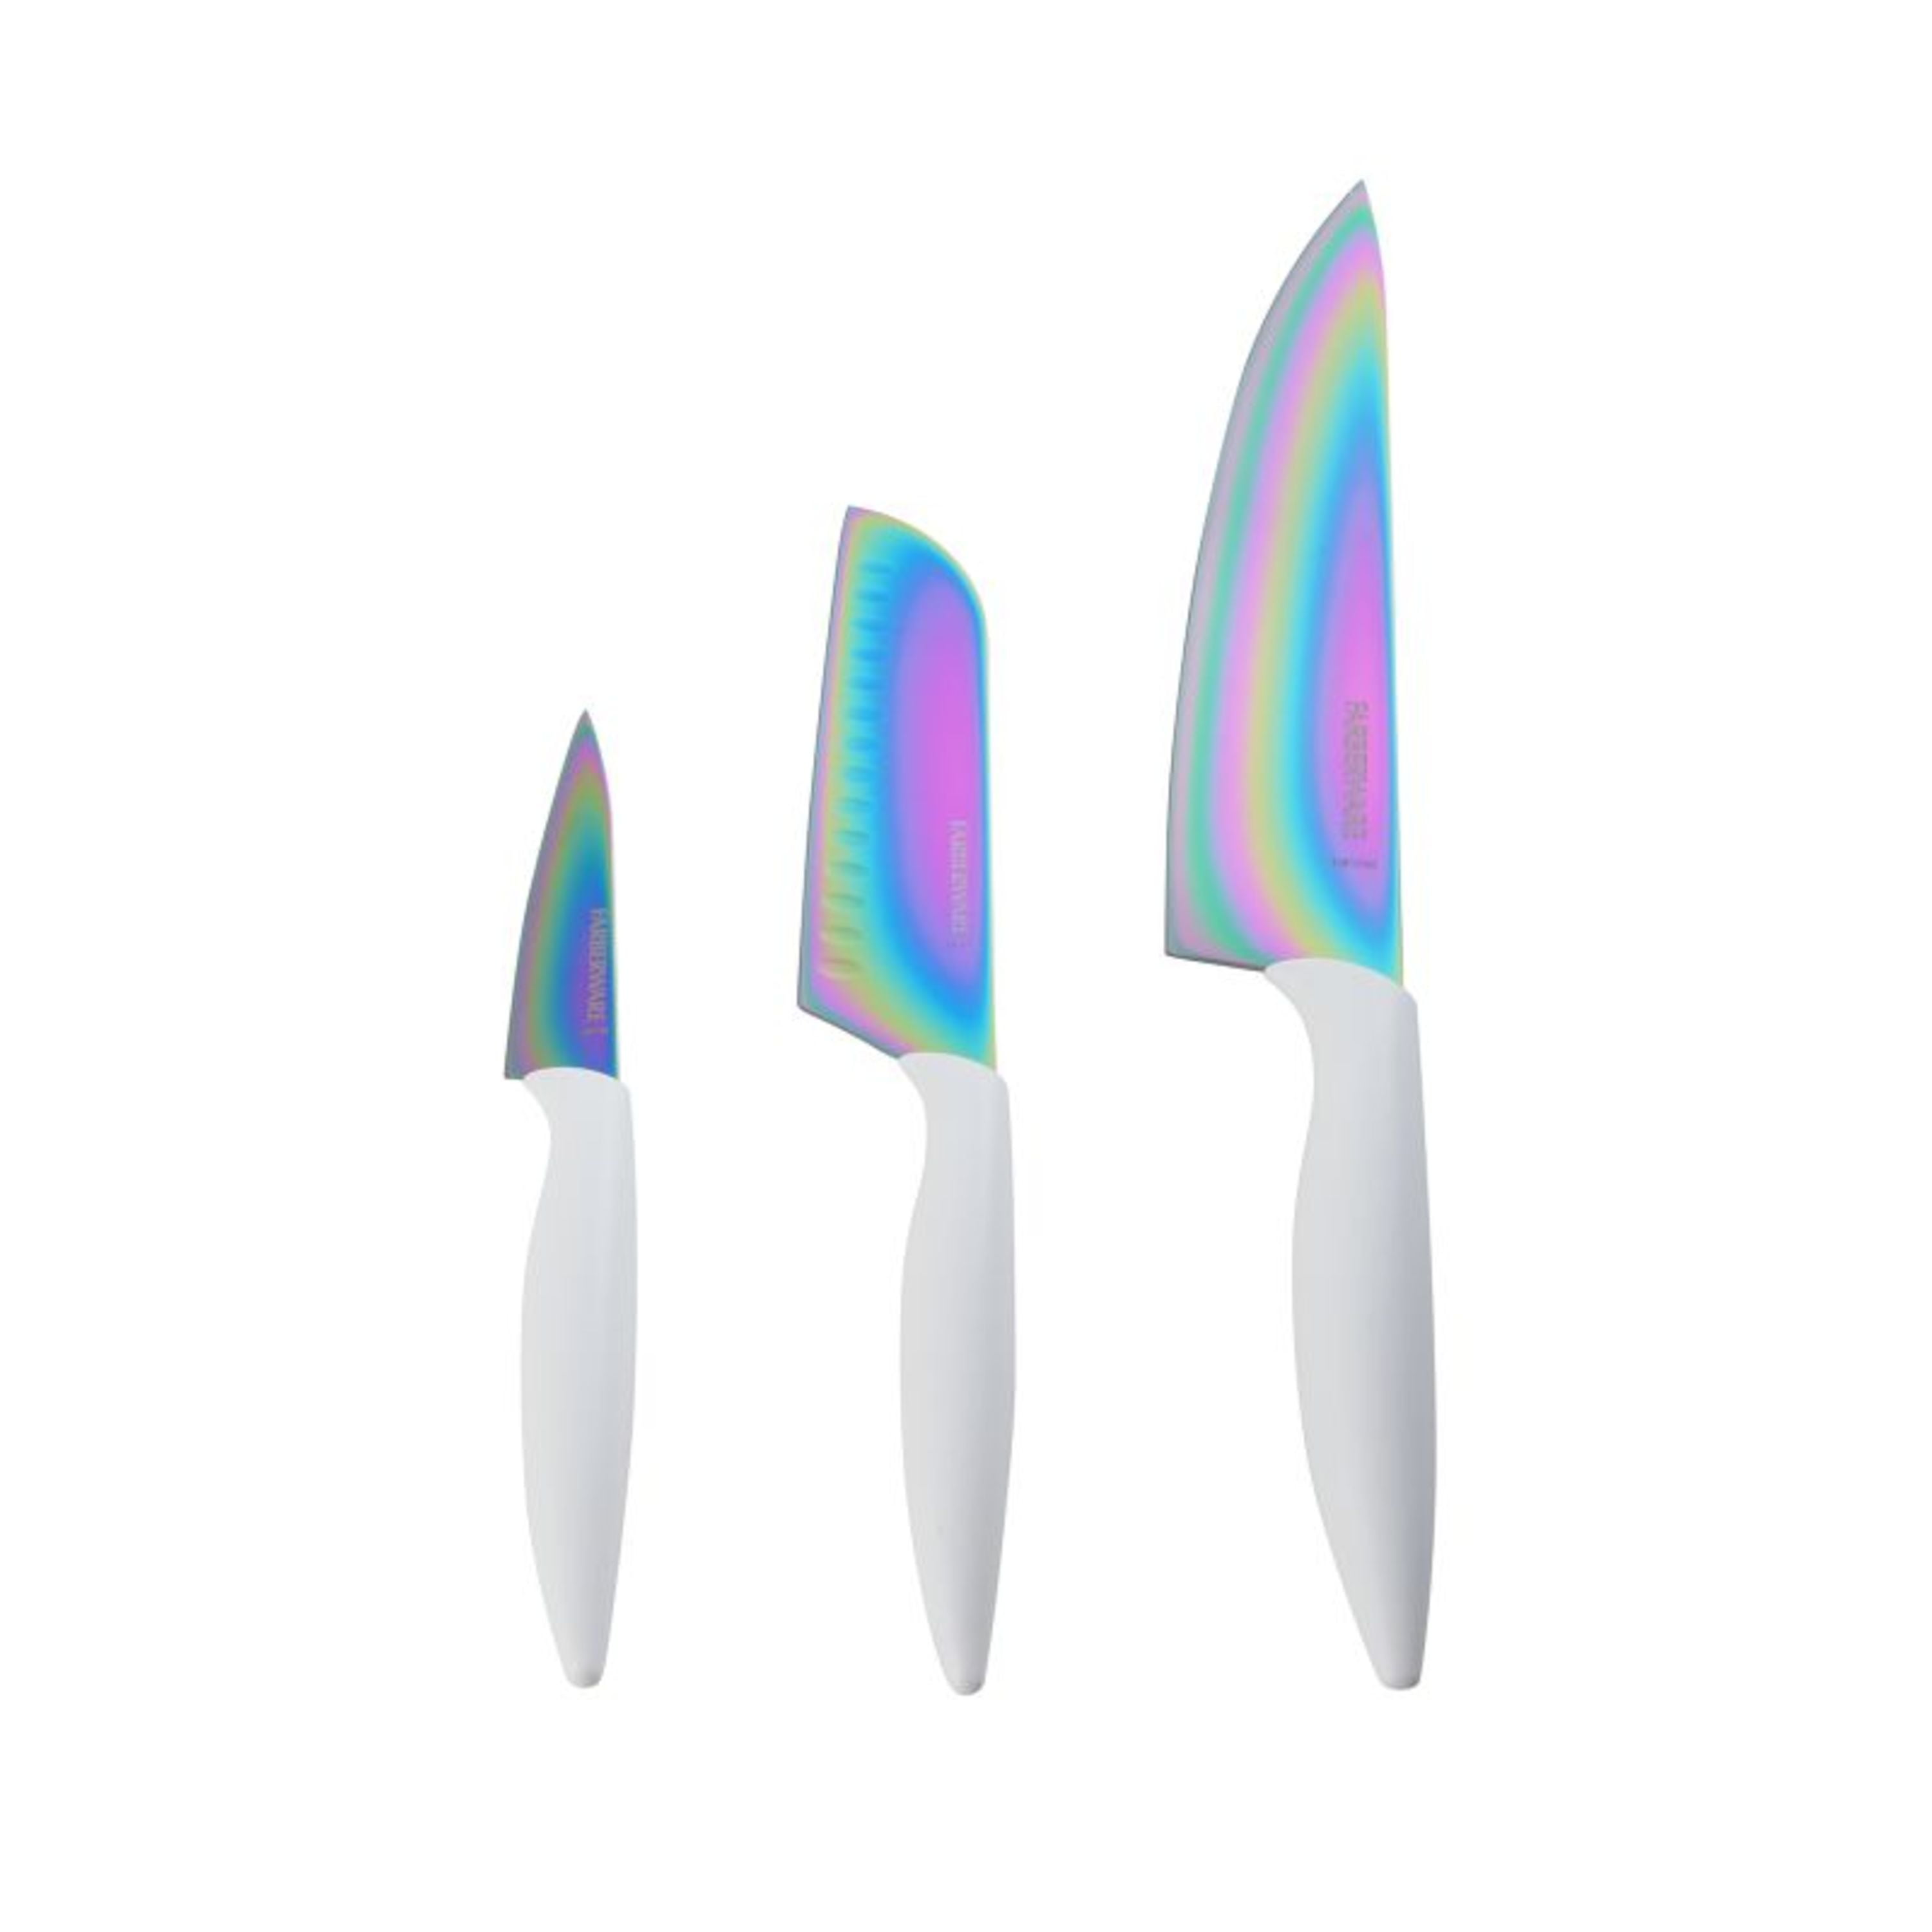  Hollory Rainbow Kitchen Knife Set 3 Piece, Razor Sharp